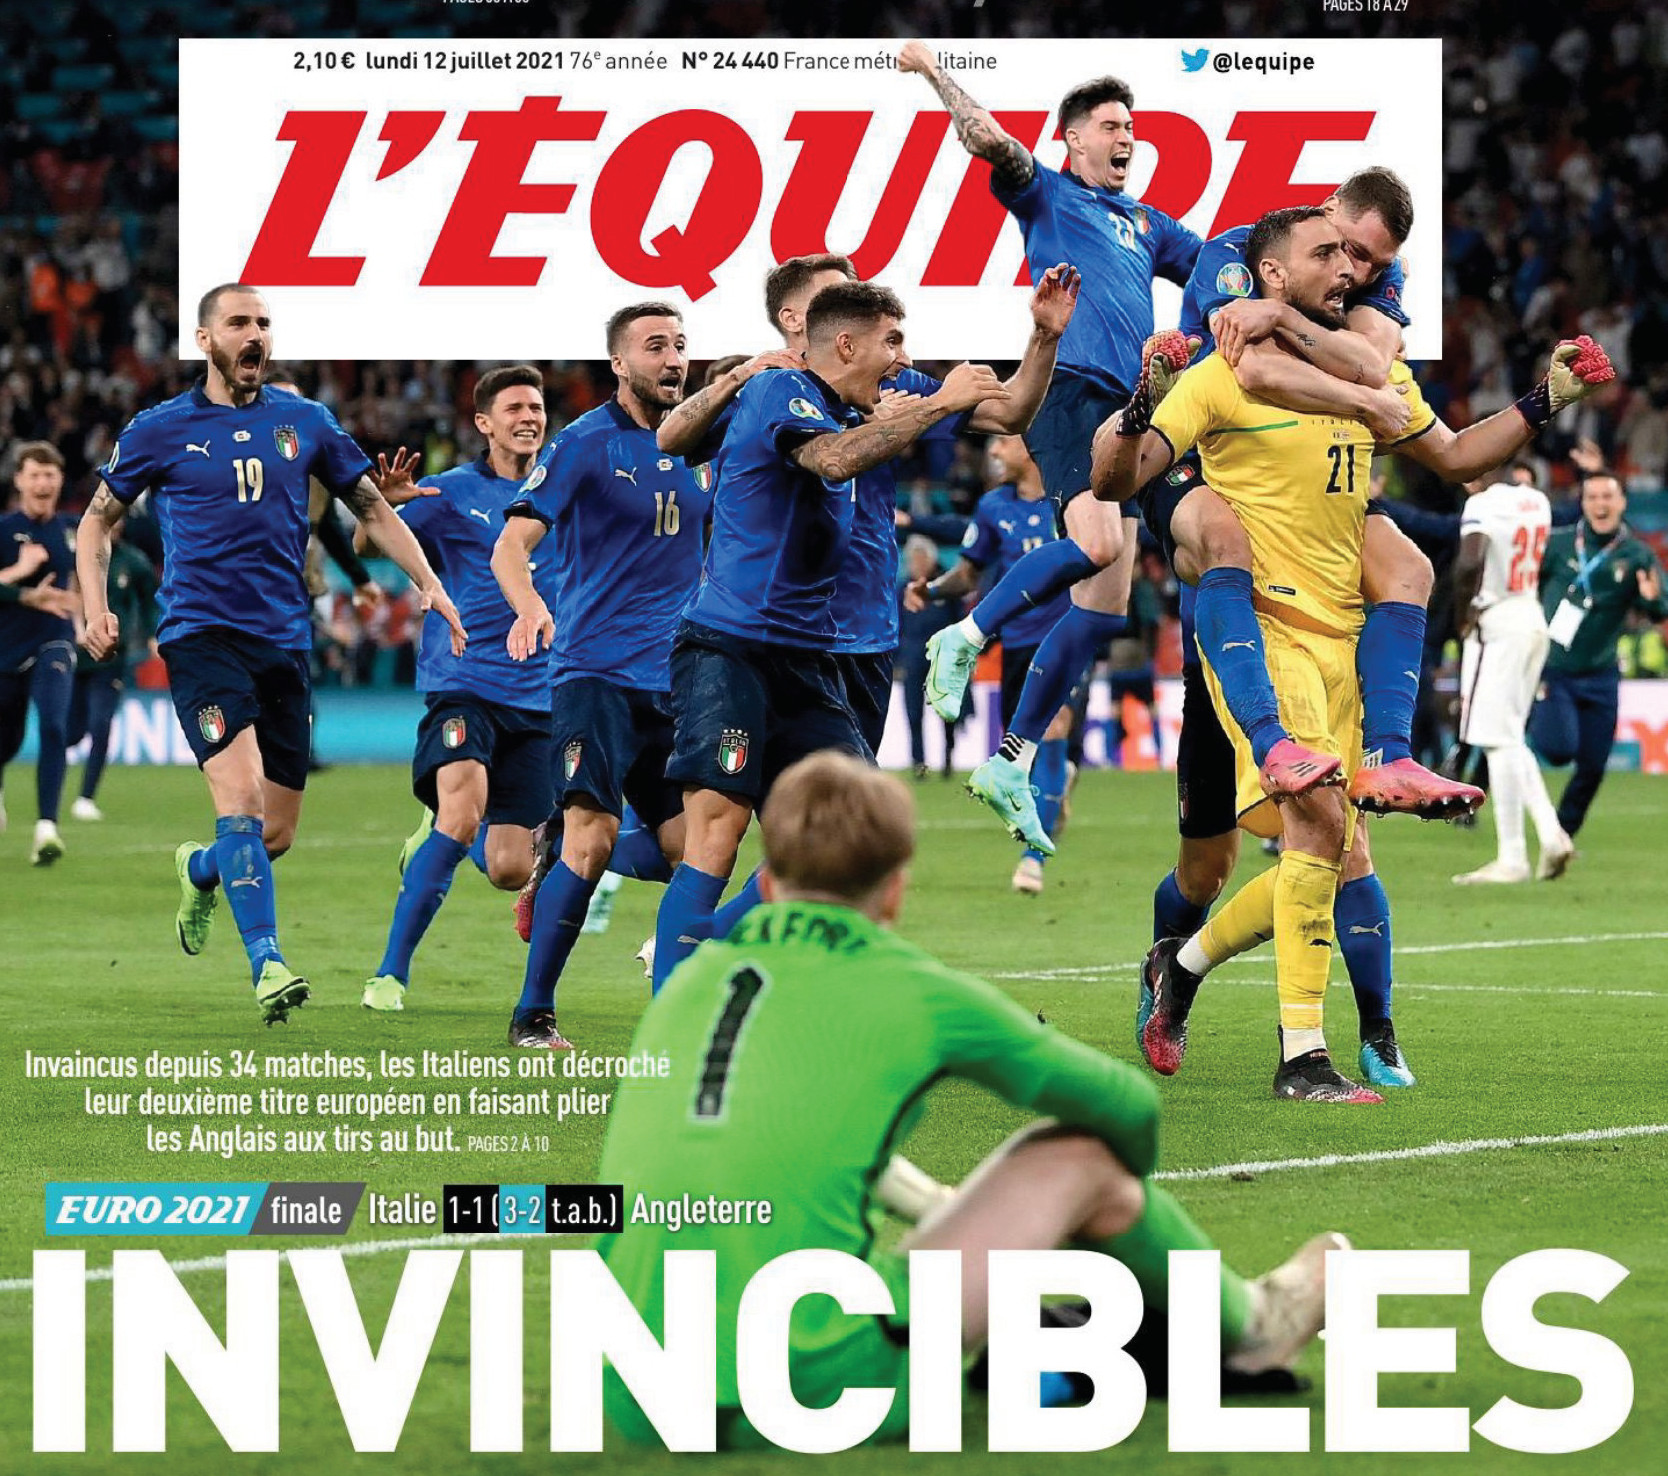 La prima pagina del quotidiano sportivo francese Equipe sulla vittoria dell'Italia